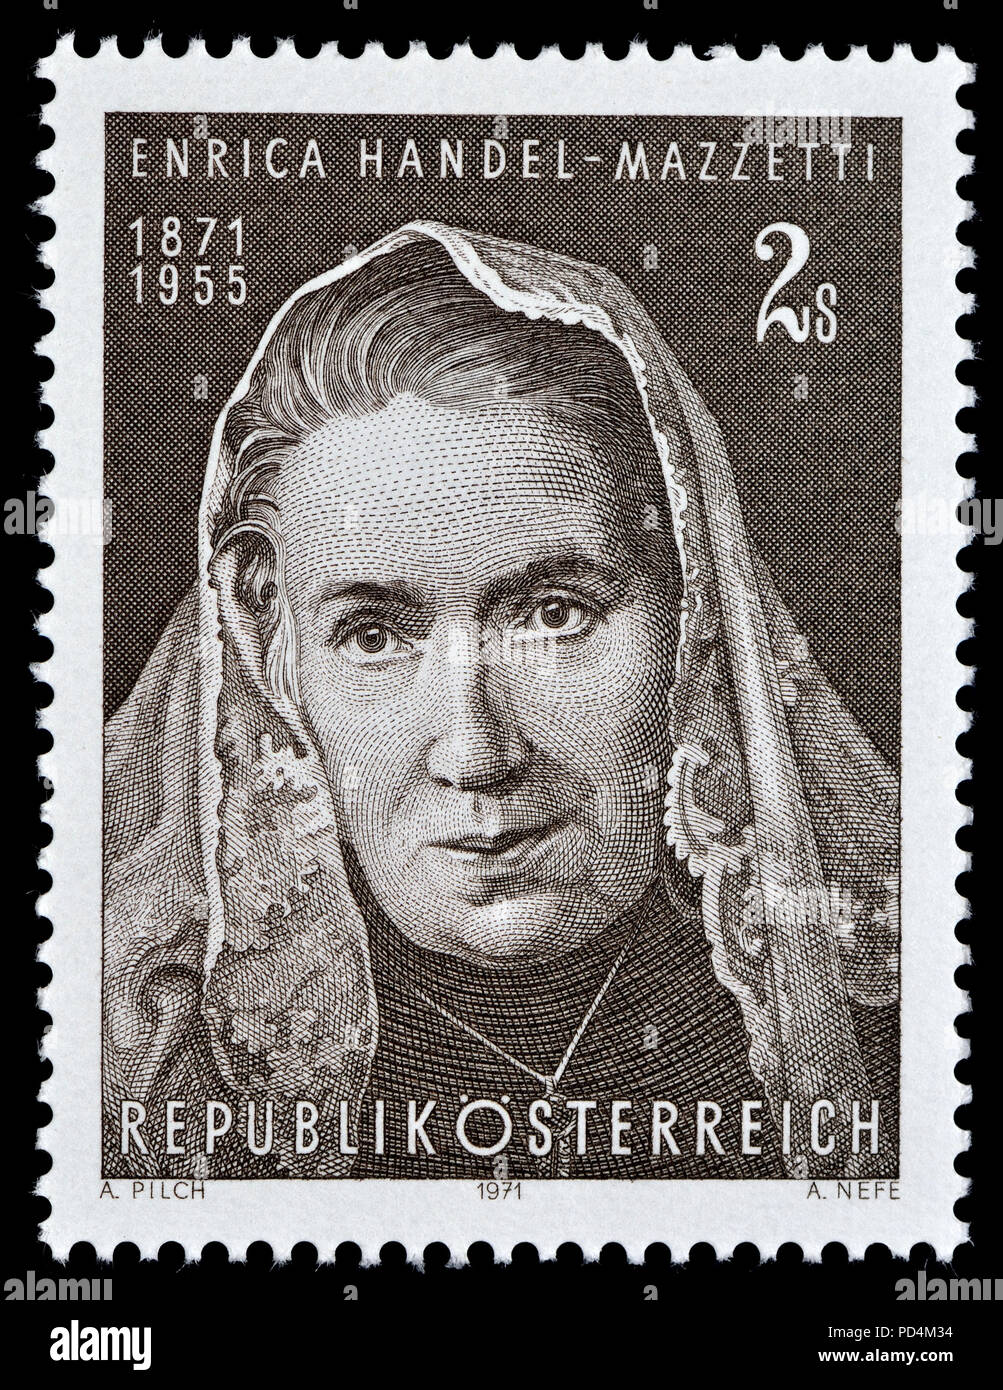 Österreichische Briefmarke (1971): Enrica von Handel-Mazzetti (1871-1955), österreichischer Dichter und Schriftsteller zum Schreiben historische Romane bekannt, insbesondere Sterben Stockfoto